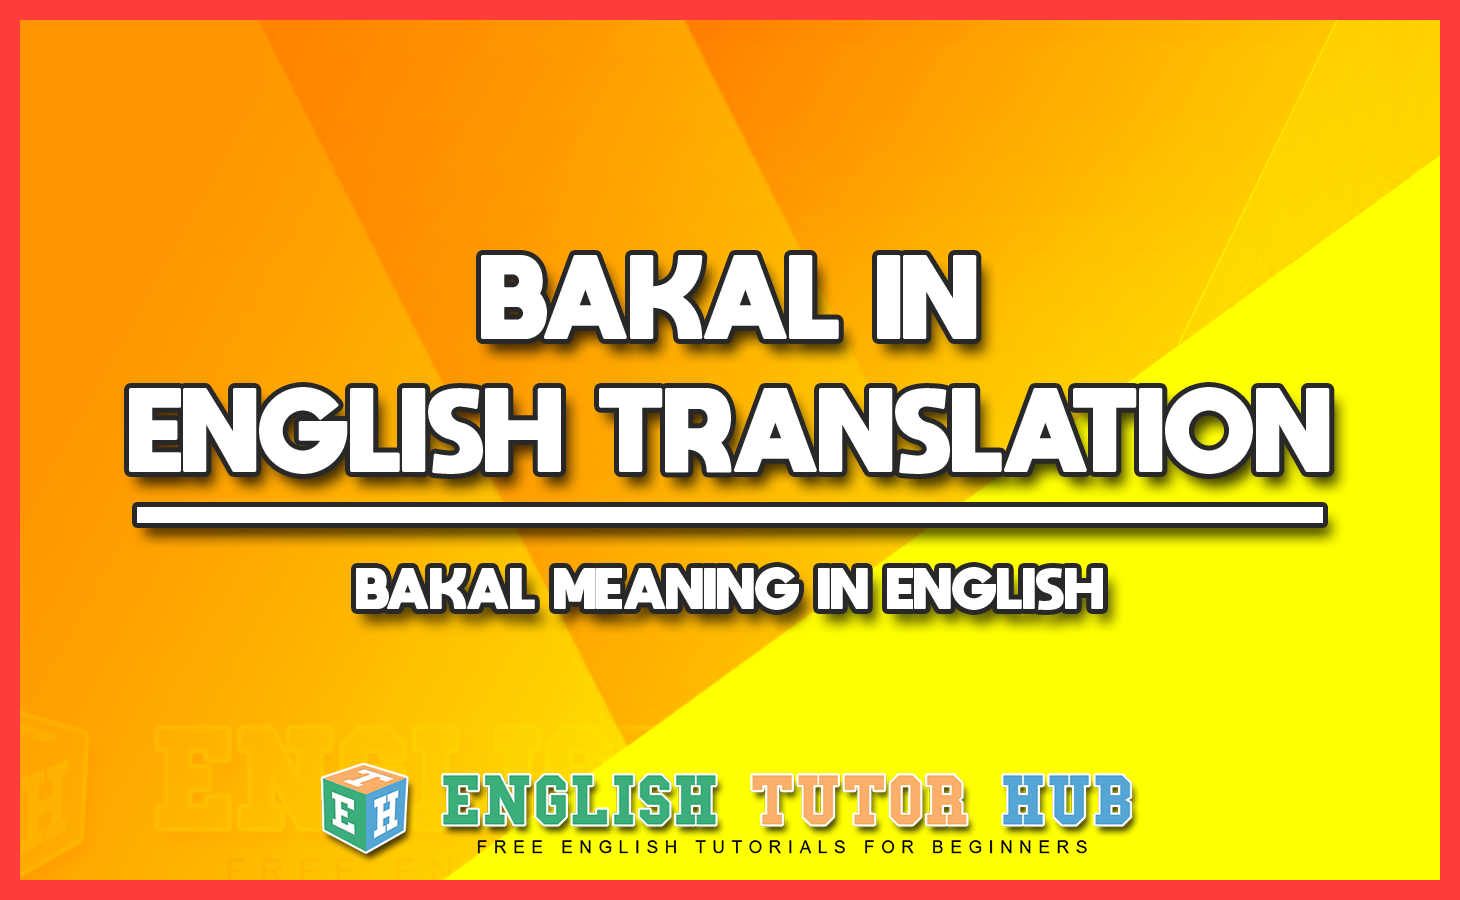 BAKAL IN ENGLISH TRANSLATION - BAKAL MEANING IN ENGLISH